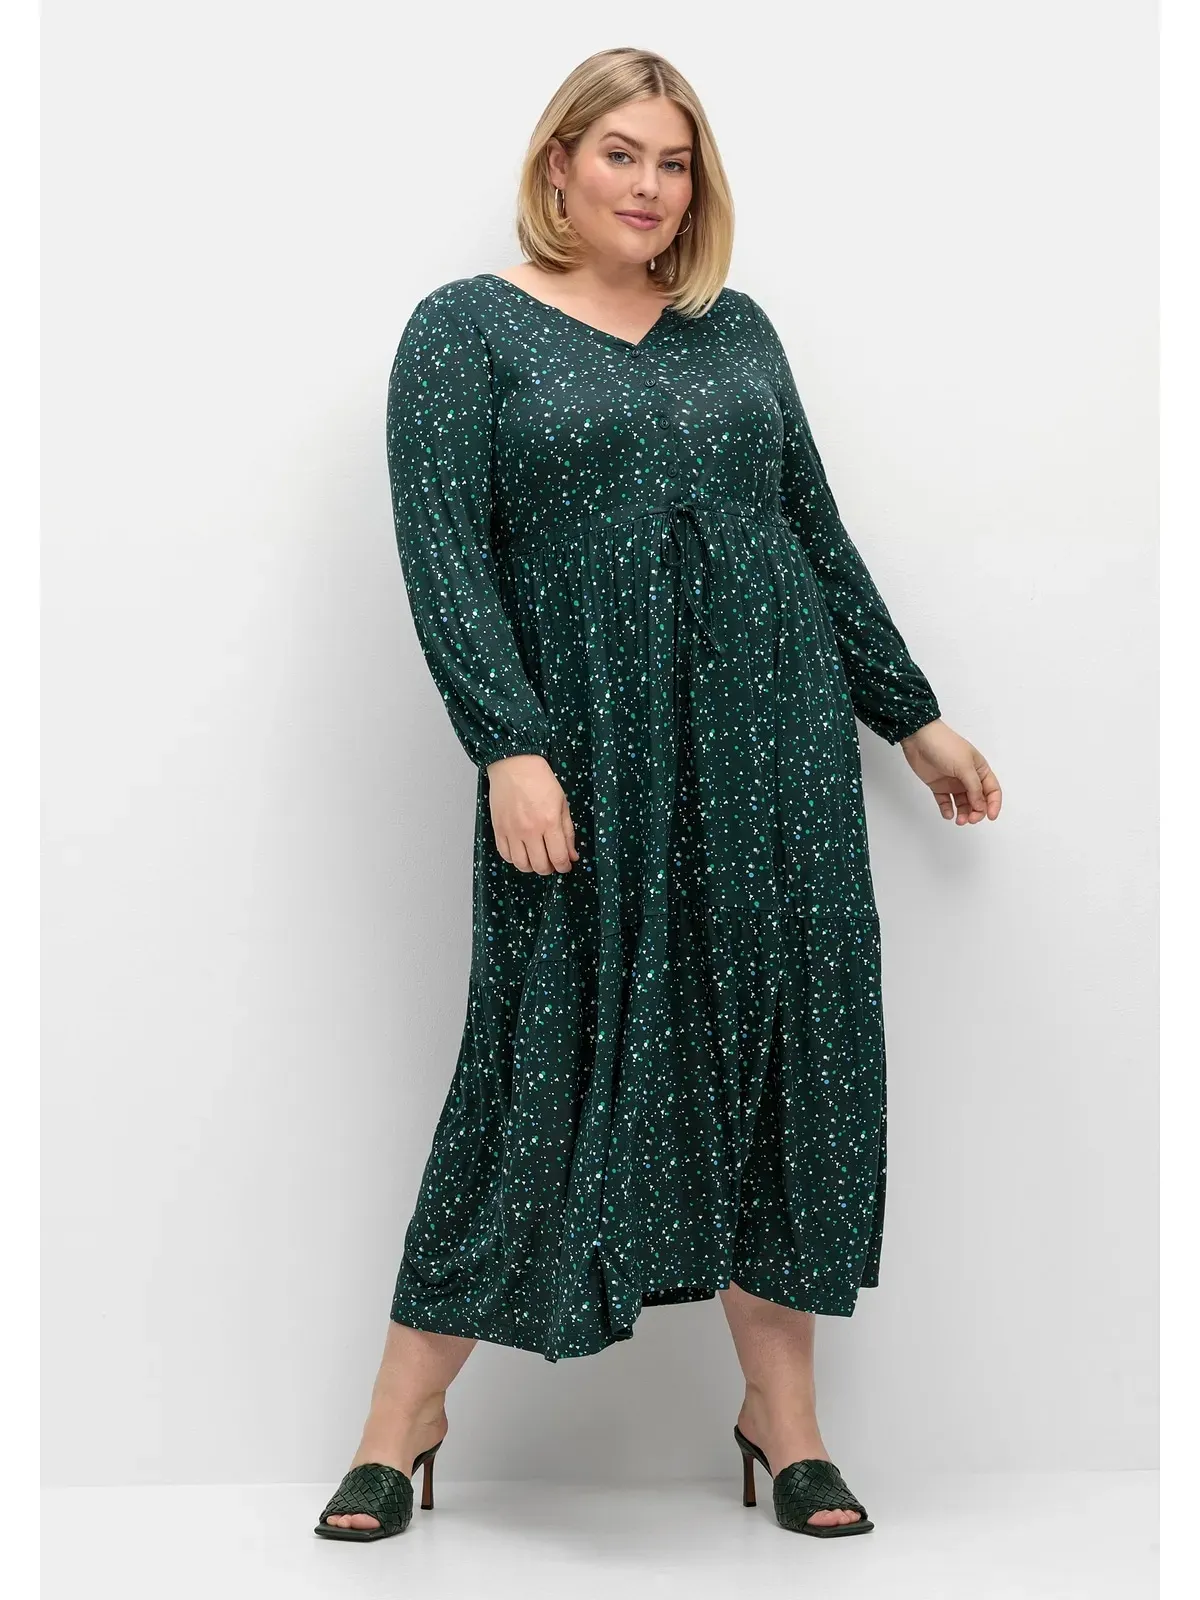 Jerseykleid SHEEGO "Große Größen" Gr. 58, Normalgrößen, grün (tiefgrün gemustert) Damen Kleider Freizeitkleider